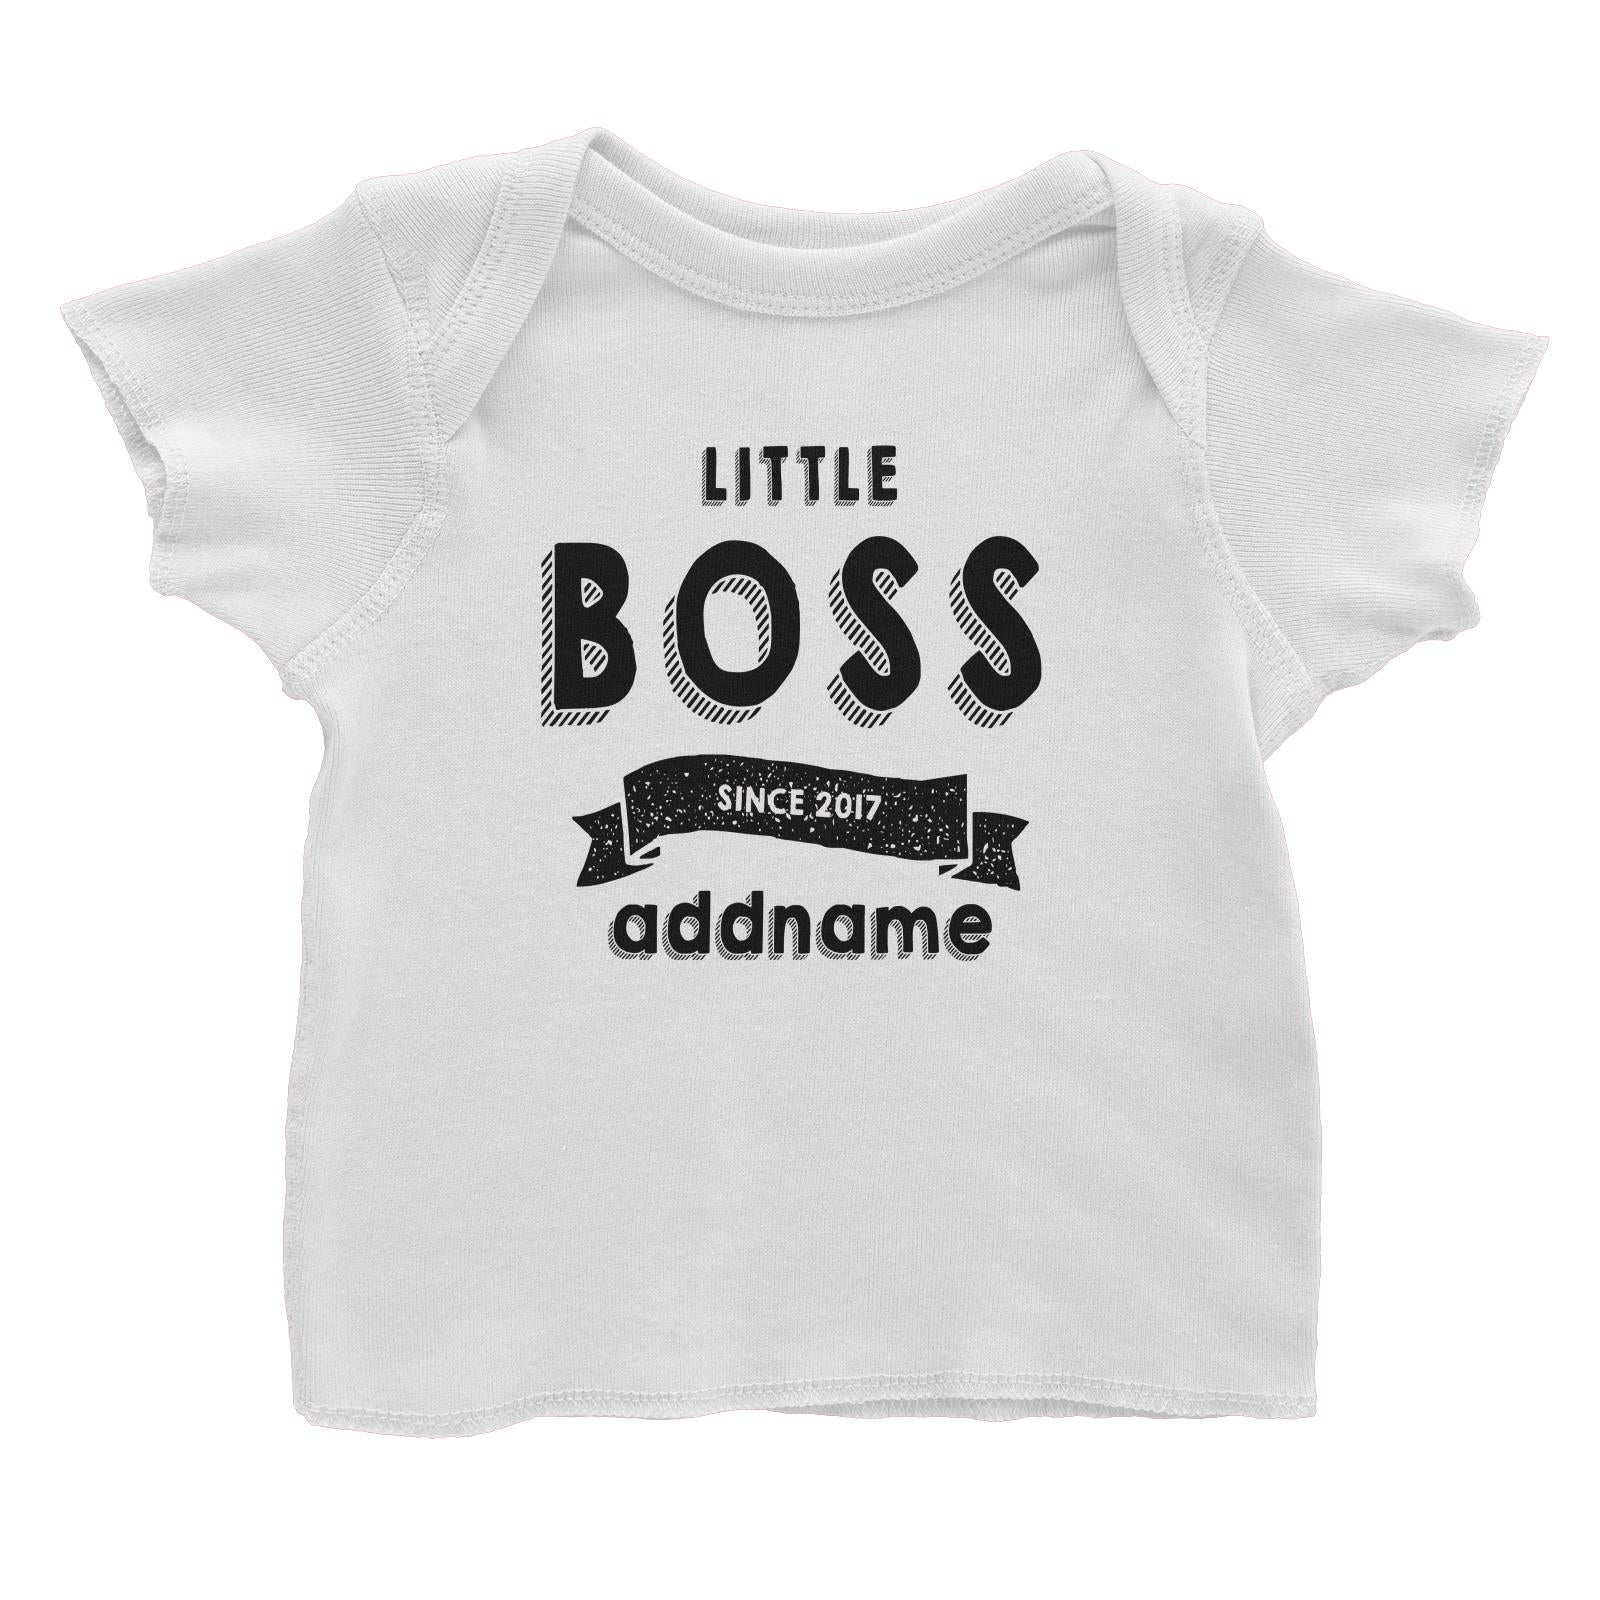 Little Boss Since 2017 White Baby T-Shirt